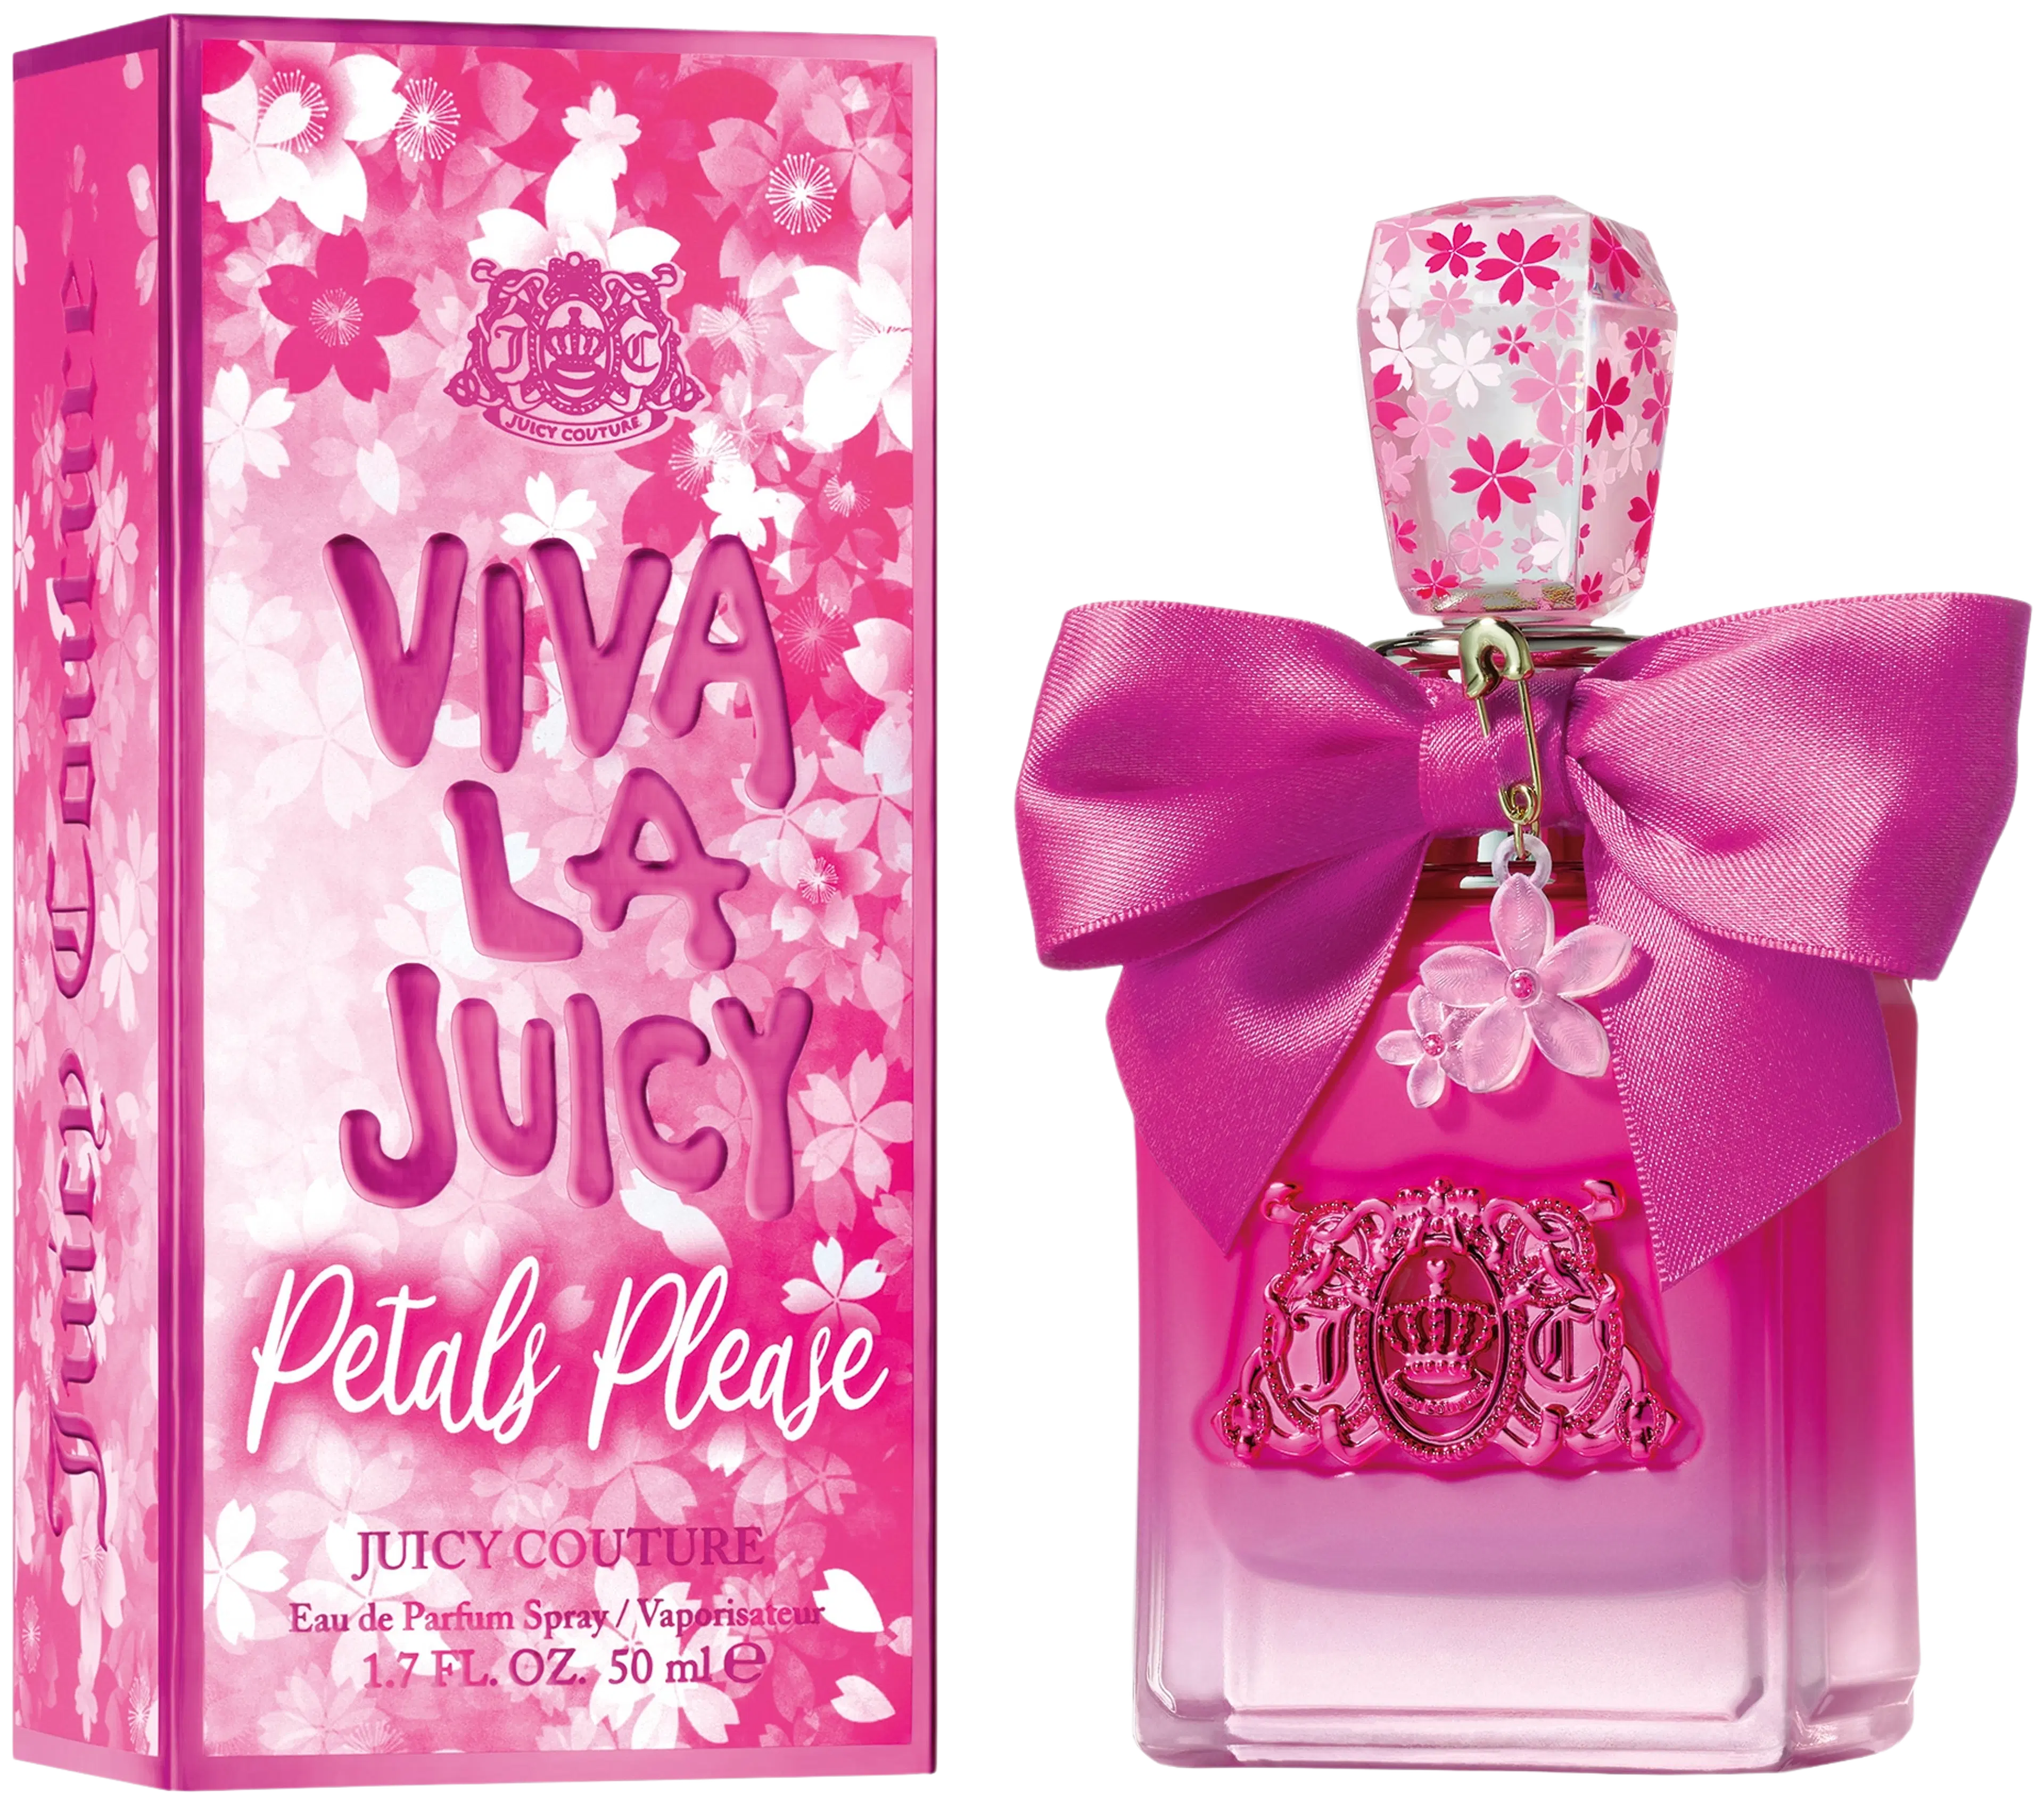 Juicy Couture Viva La Juicy Petals Please EdP tuoksu 50 ml